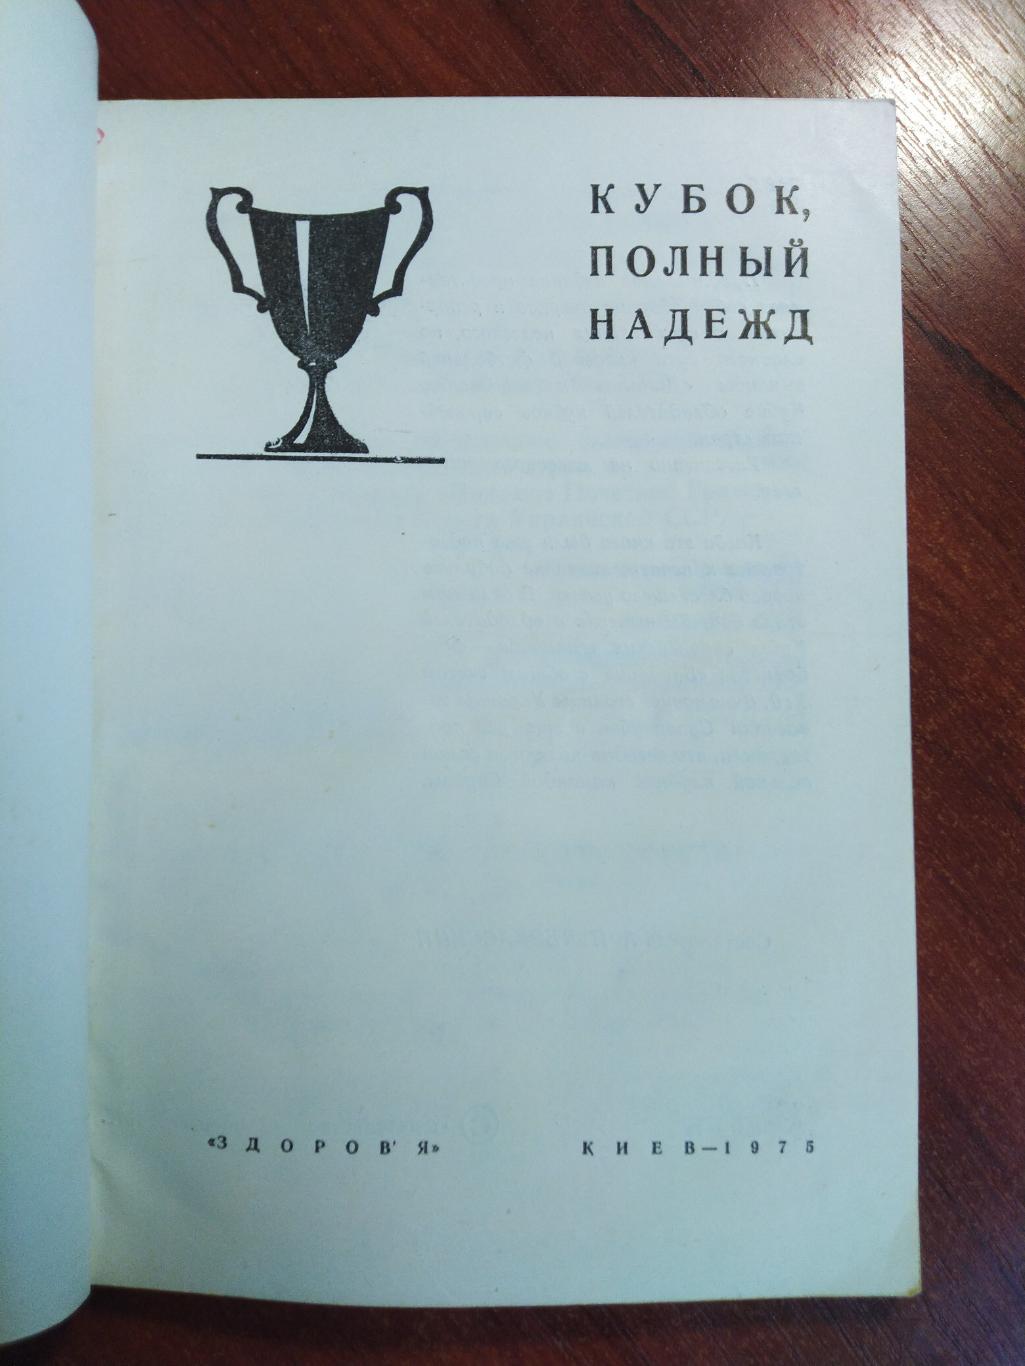 Черкасский Футбол Кубок полный надежд Динамо Киев 1975 1